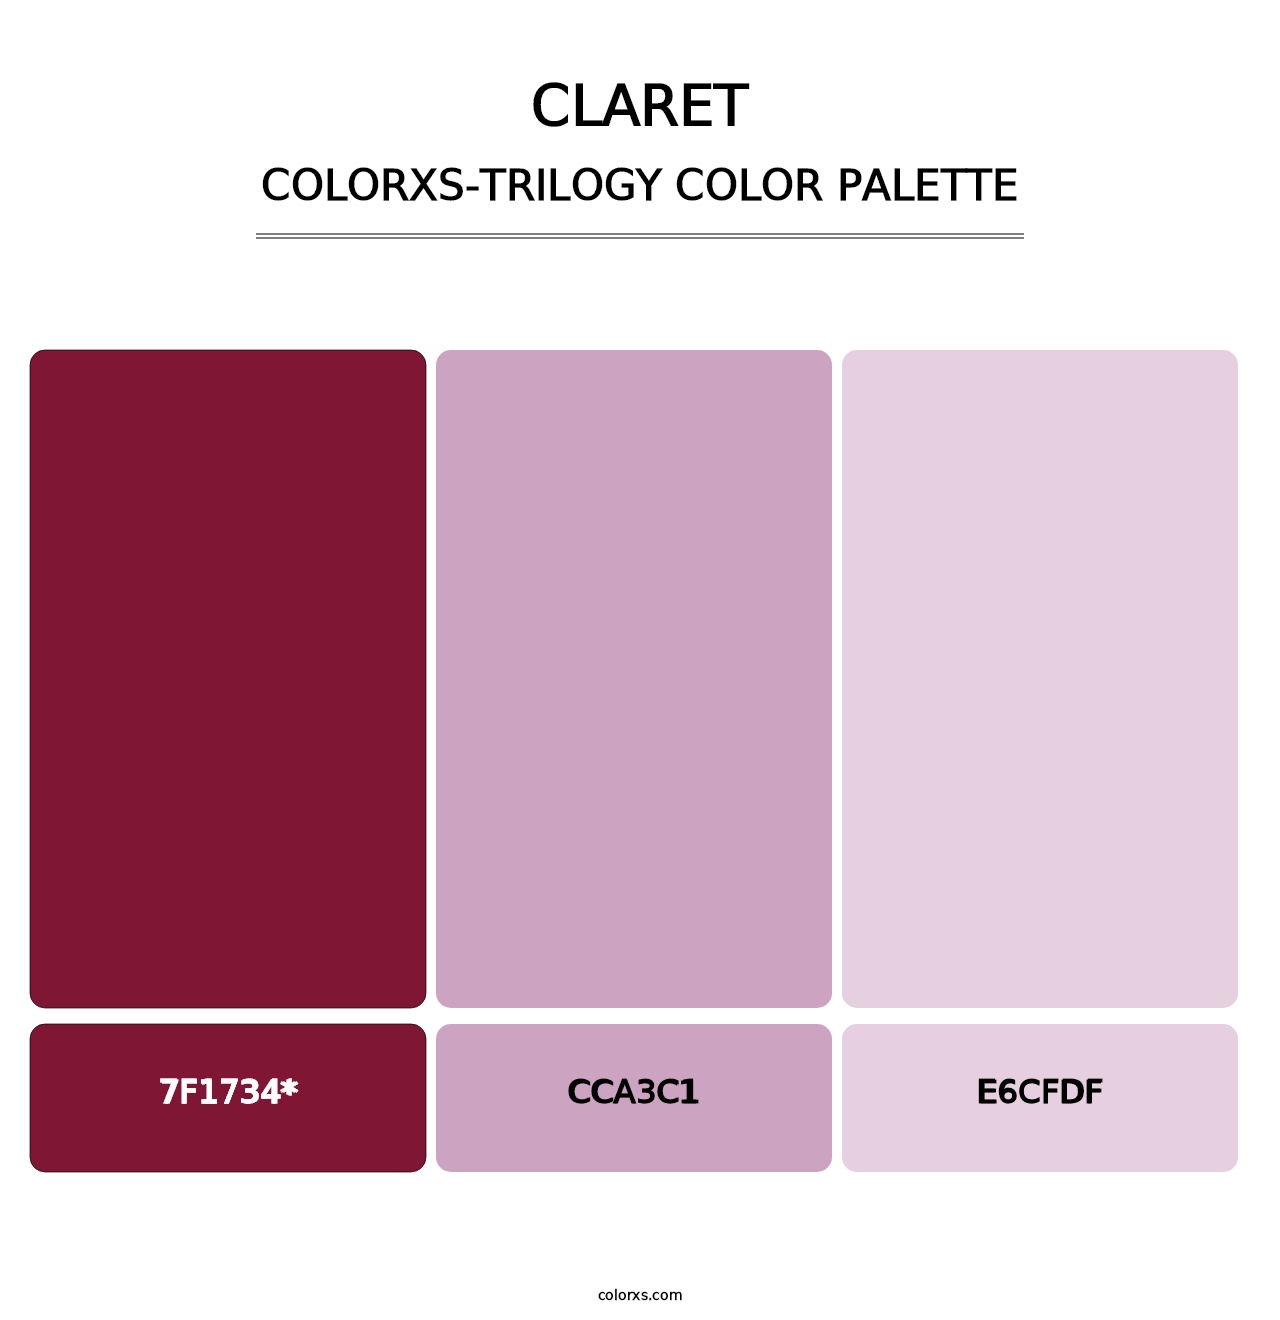 Claret - Colorxs Trilogy Palette